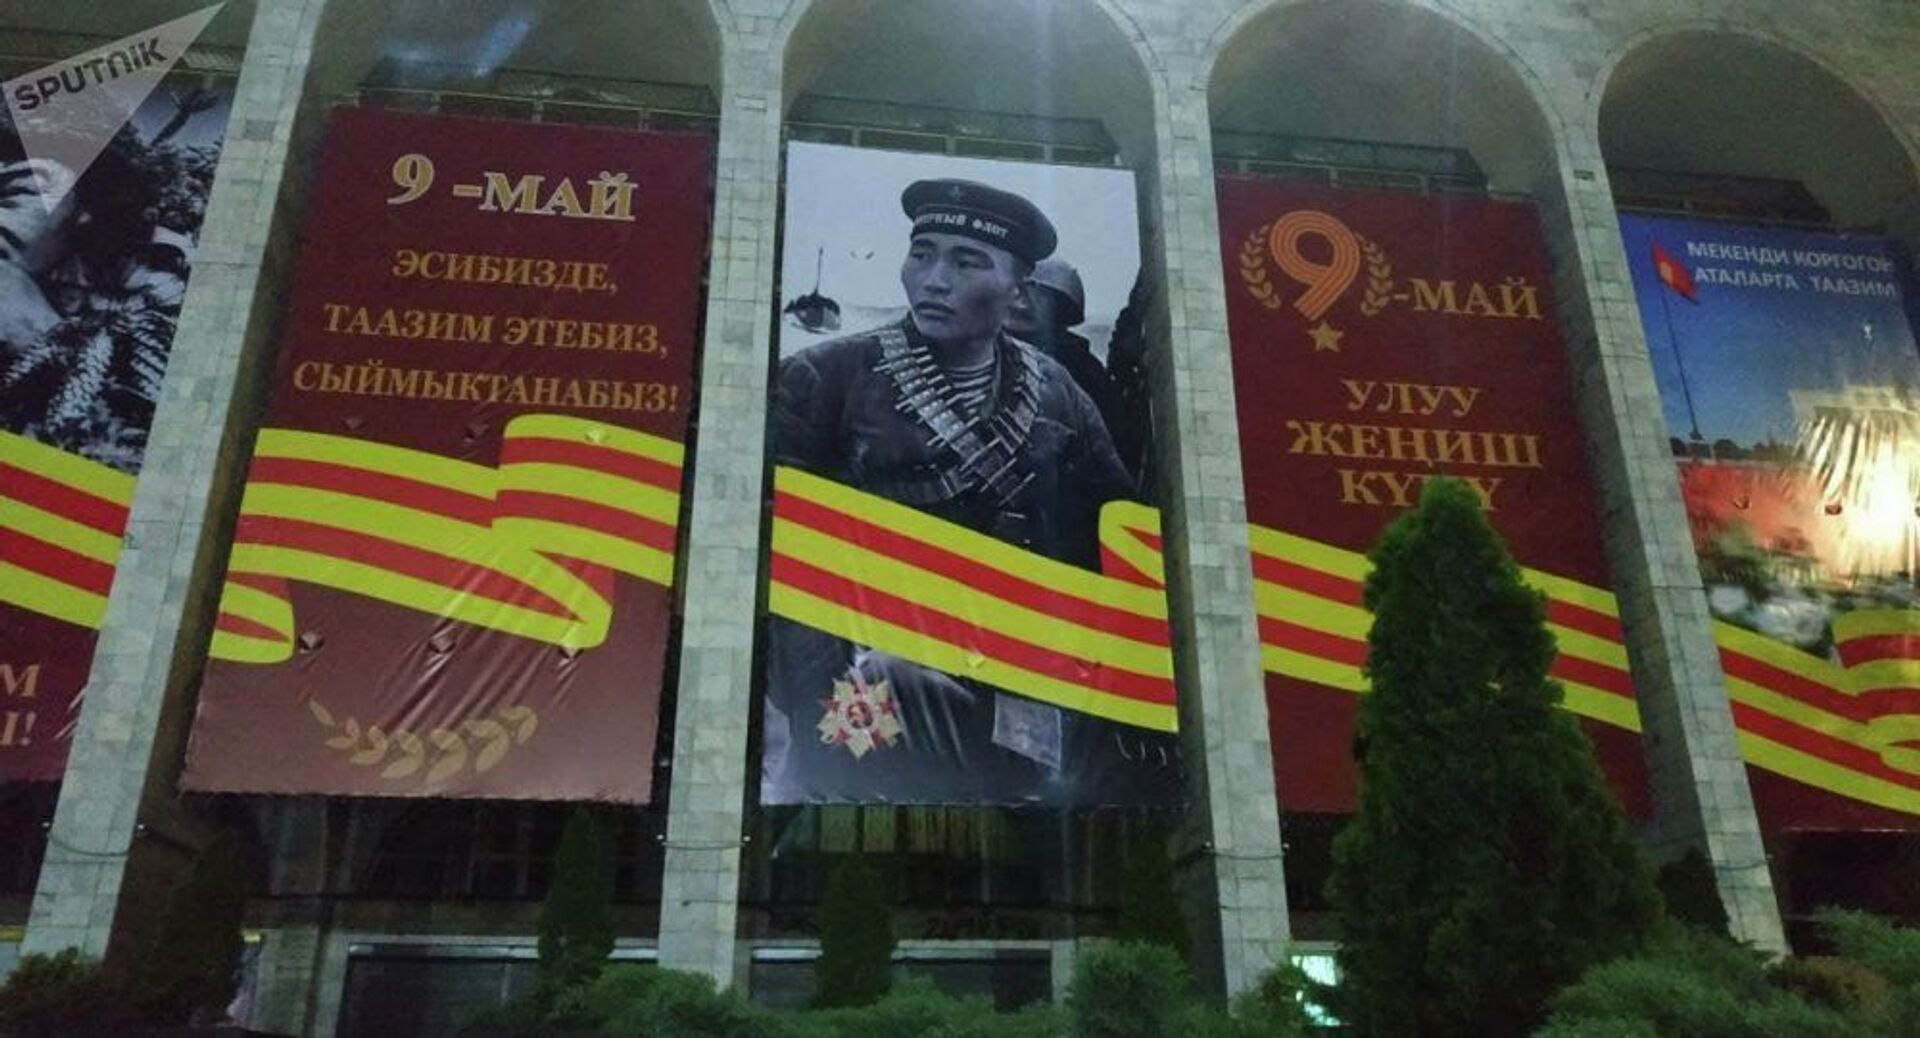 Помним, чтим, гордимся: в Бишкеке разместили плакат с фашистом - Sputnik Казахстан, 1920, 11.05.2021